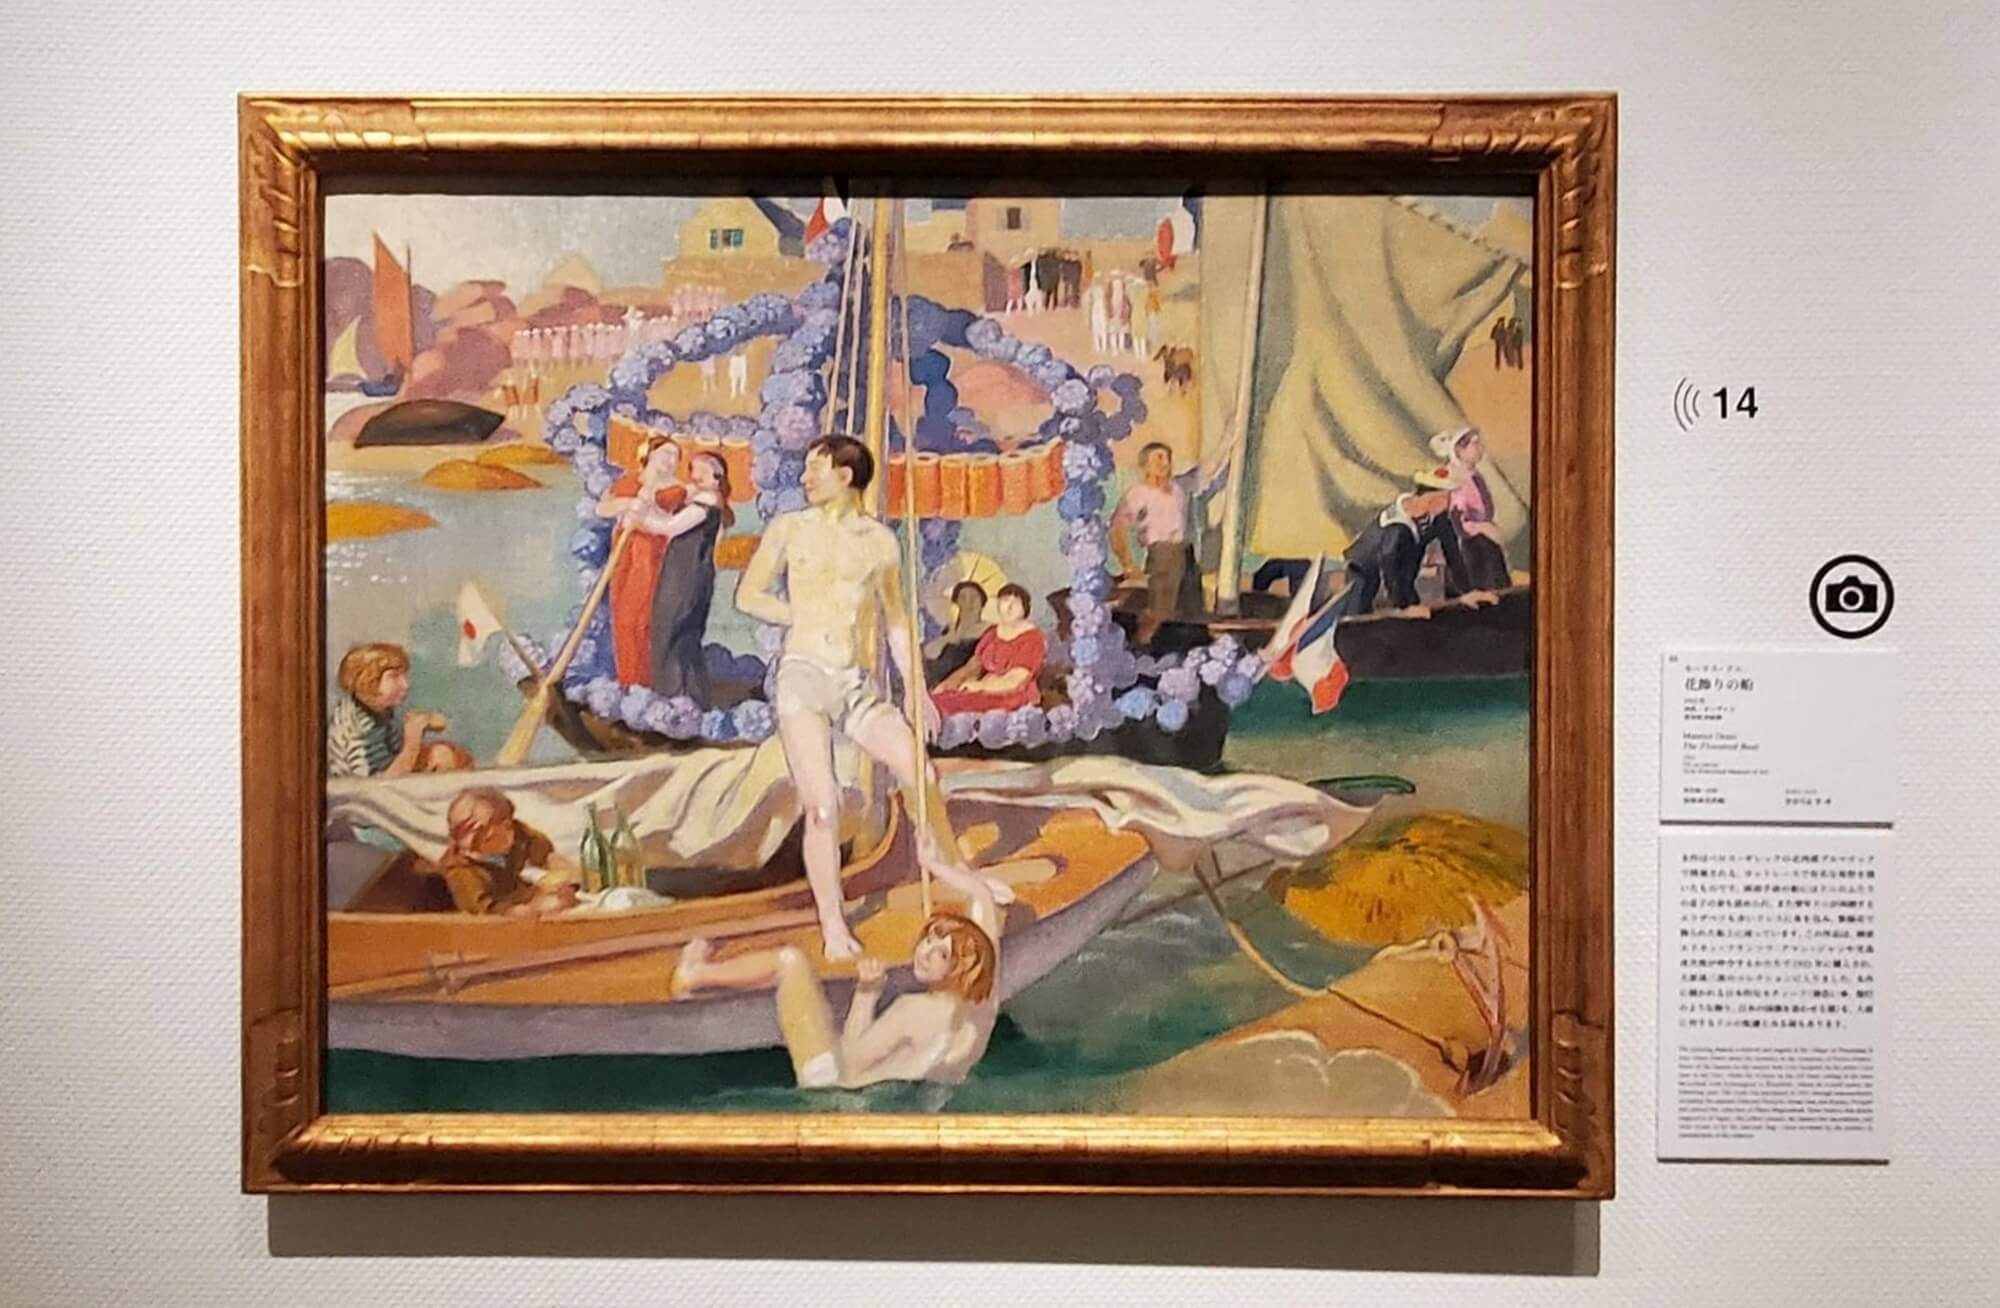 モーリス・ドニ《 花飾りの船》
1921年 油彩/カンヴァス 愛知県美術館